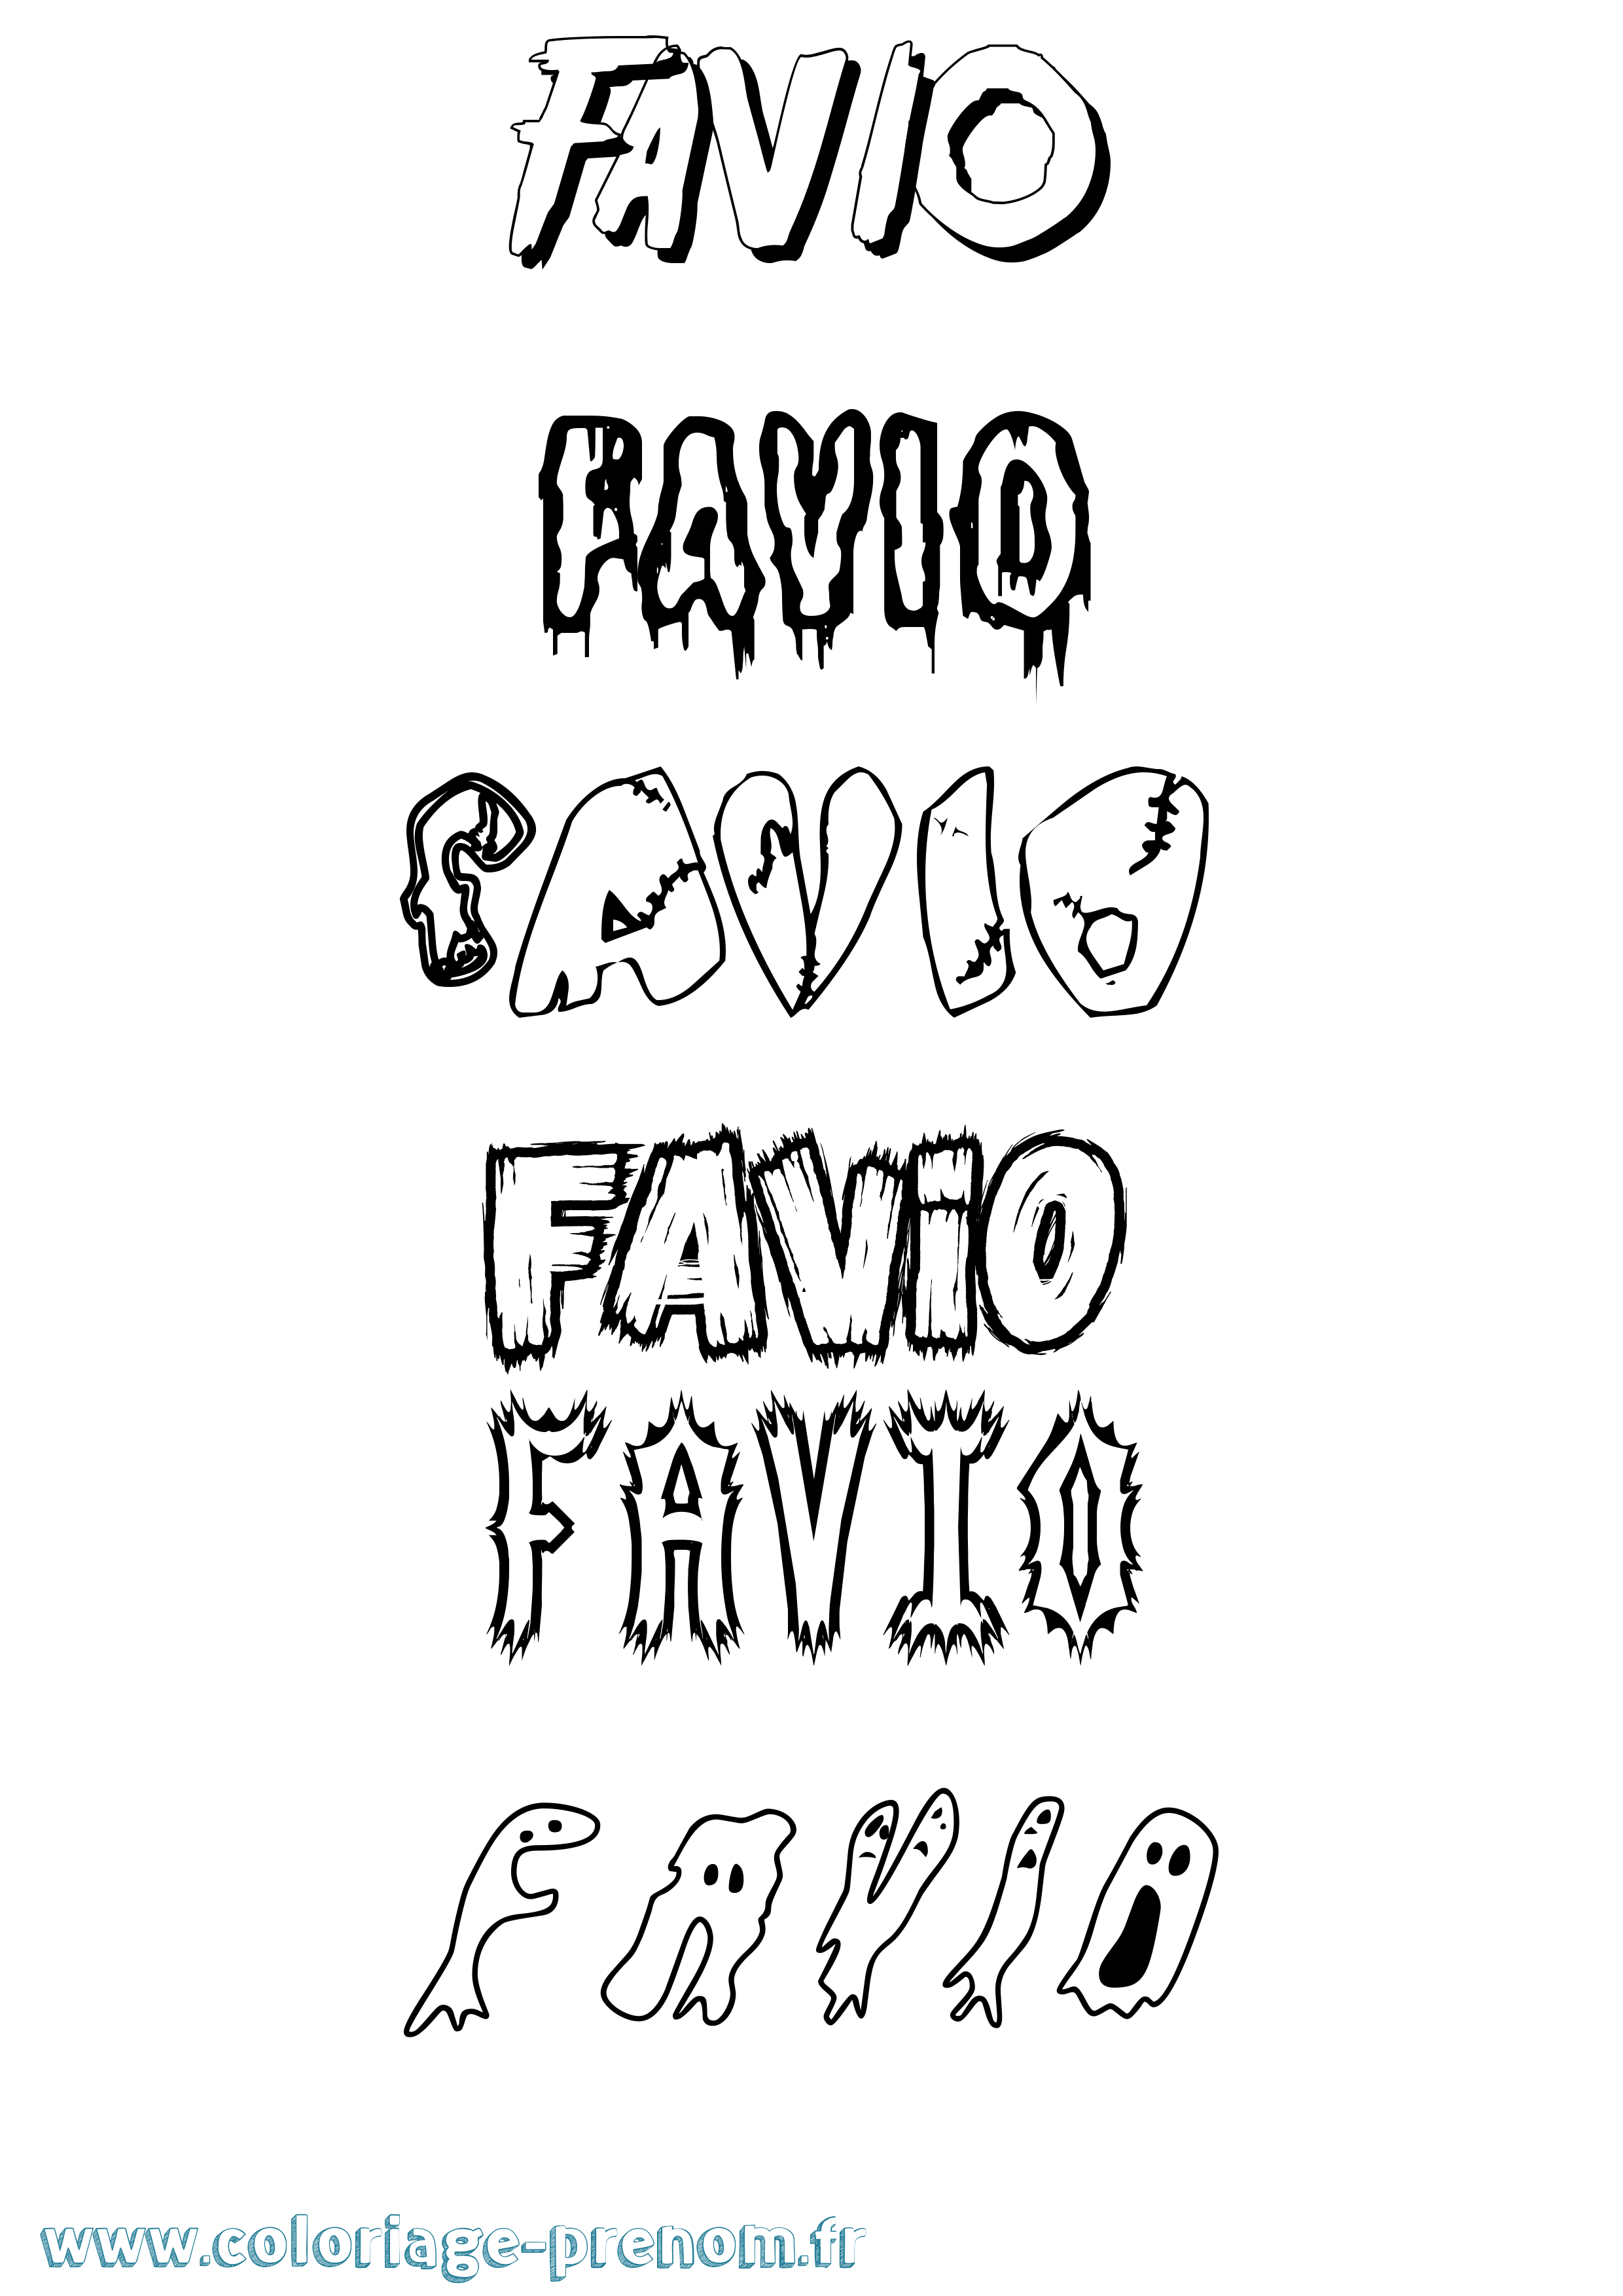 Coloriage prénom Favio Frisson